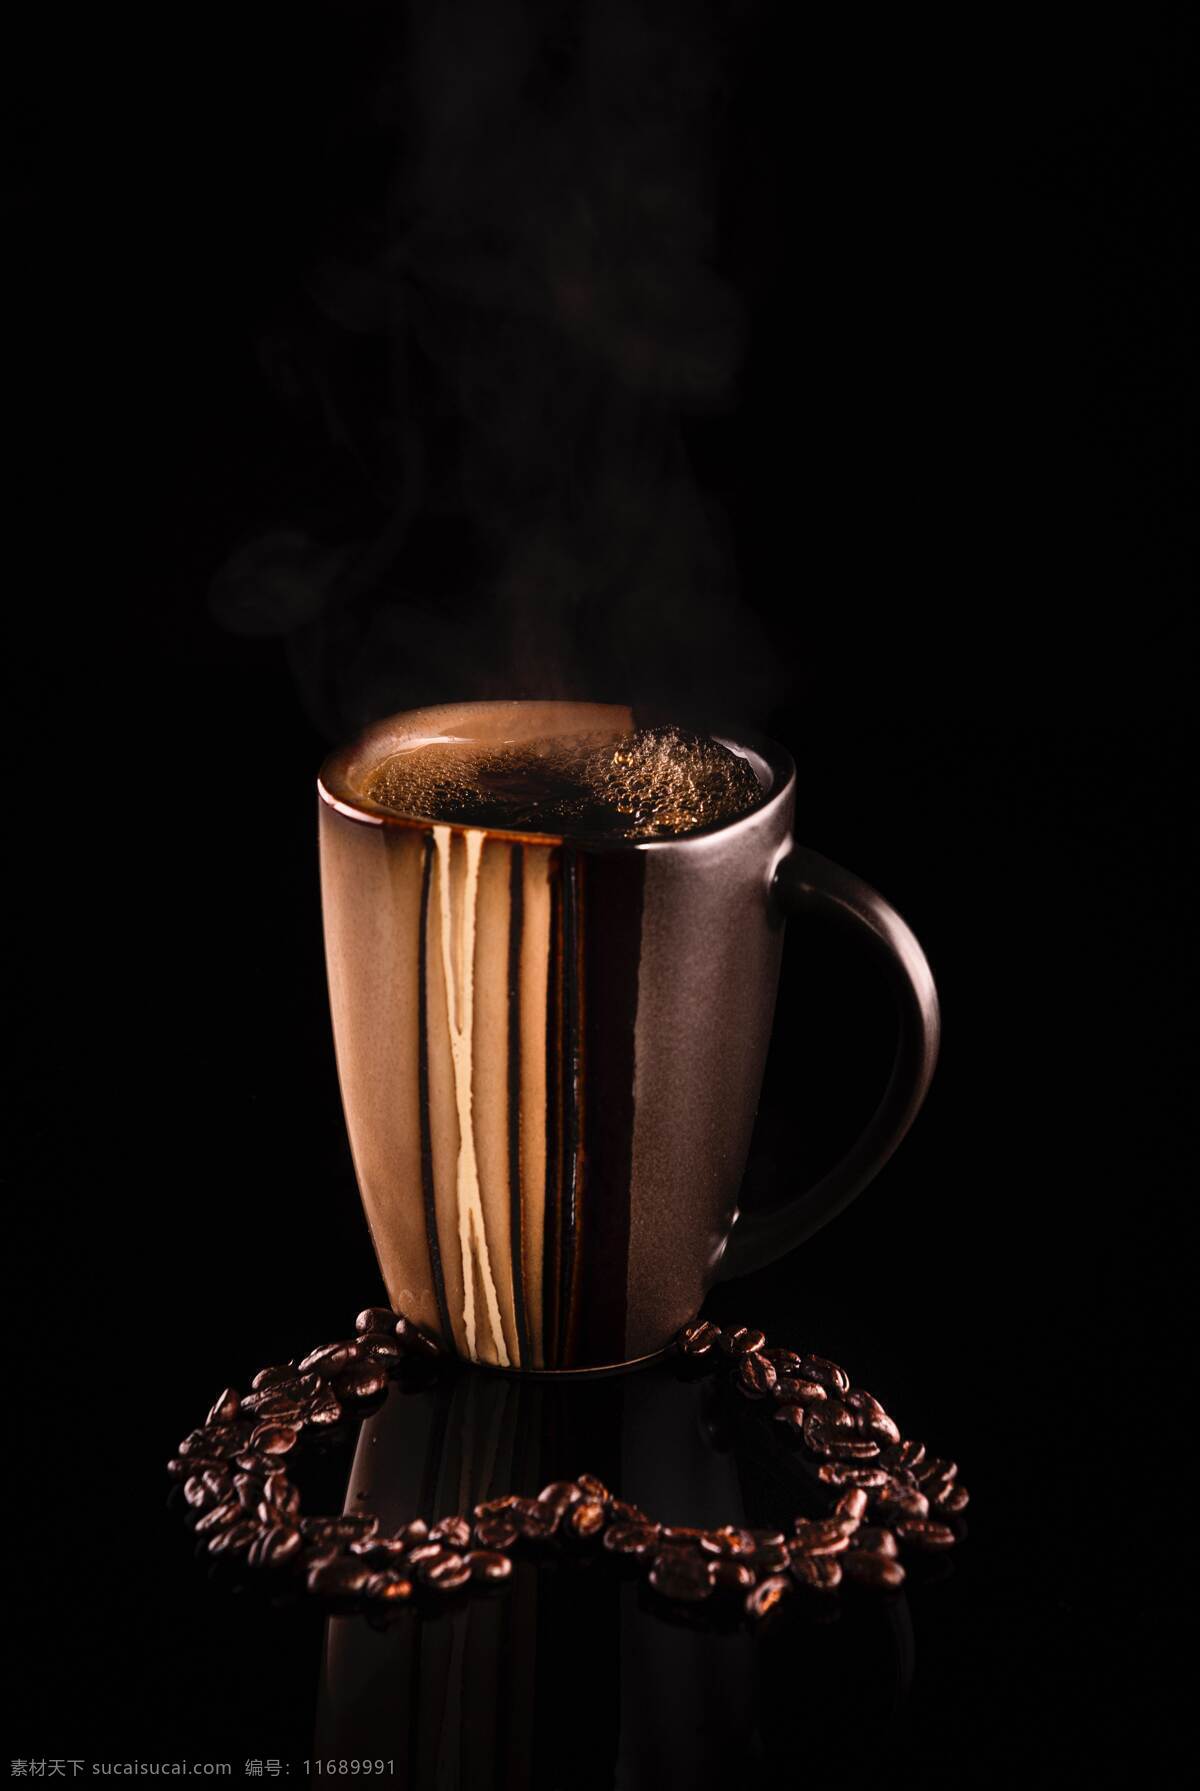 咖啡背景图片 咖啡背景 咖啡豆 饮料 速溶咖啡 拿铁 美式 摩卡 餐饮美食 西餐美食